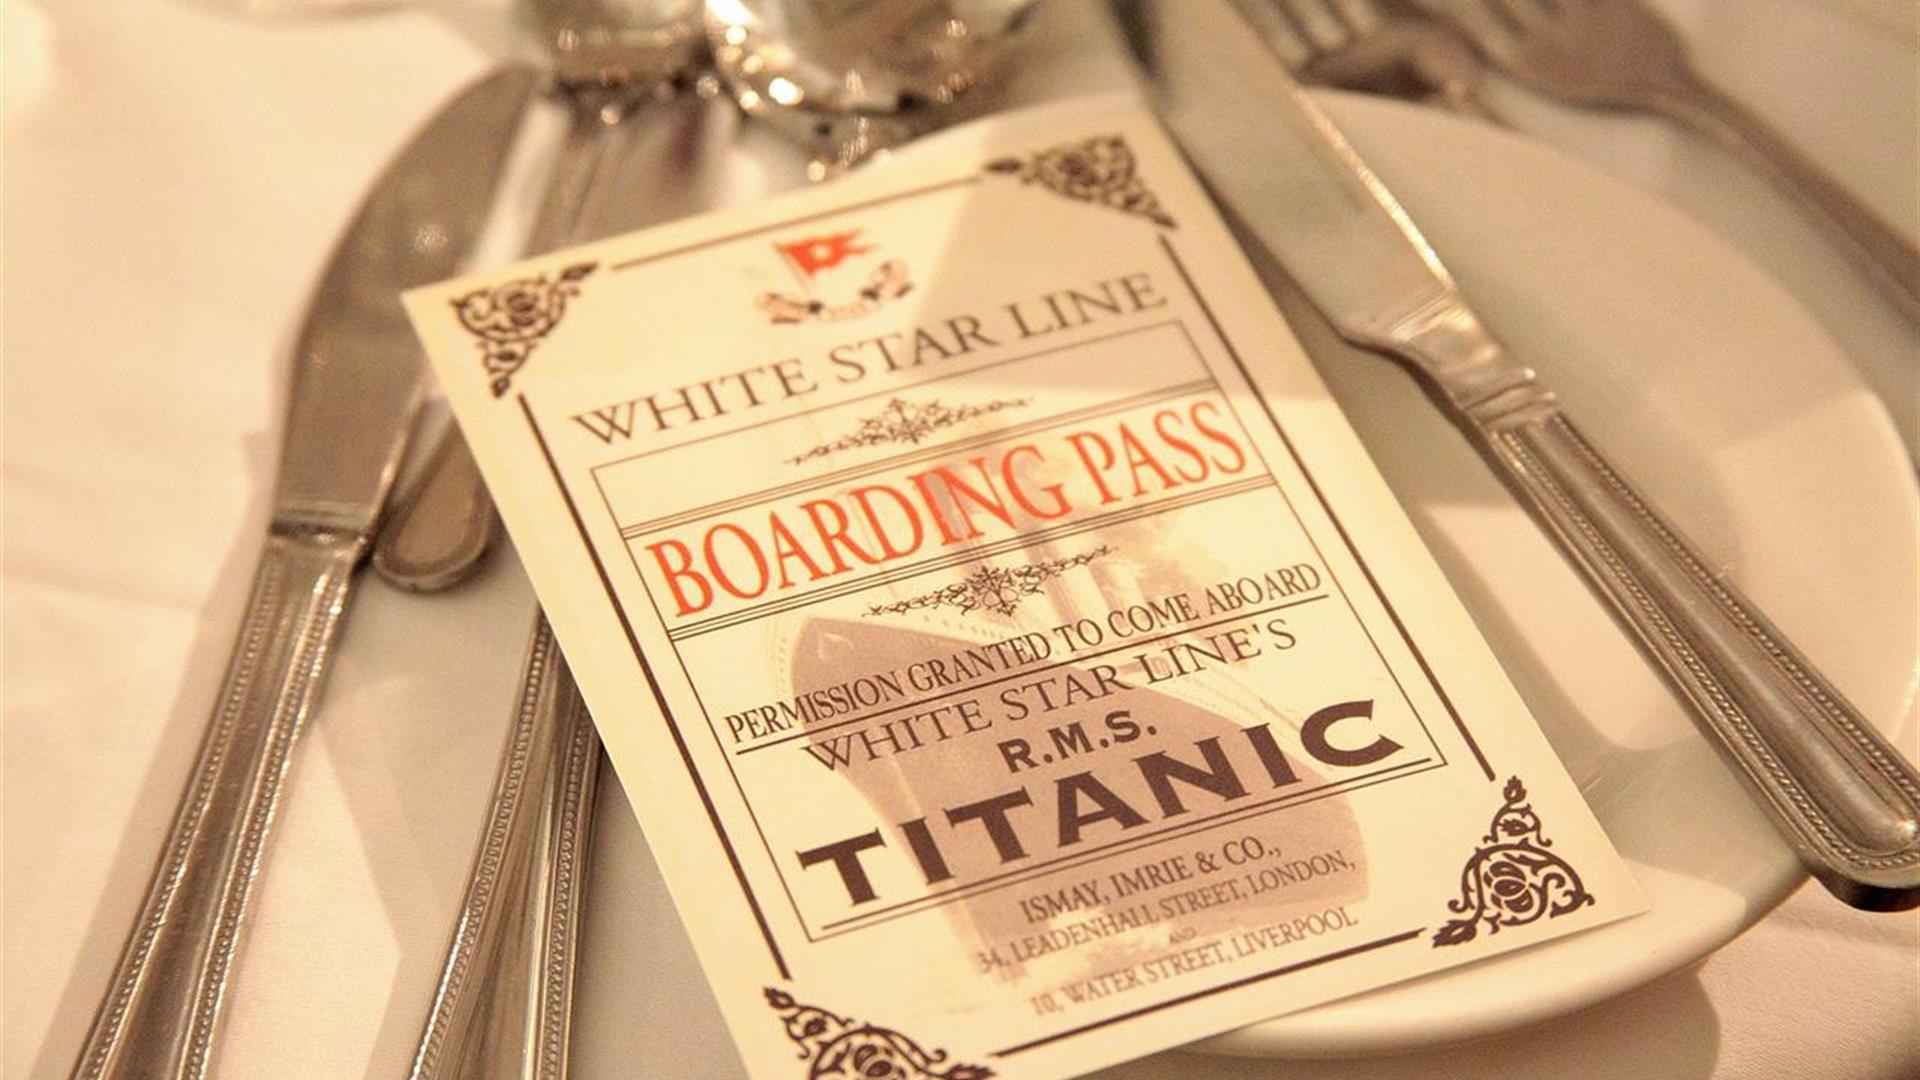 Titanic boarding pass leaflet, part of themed dinner